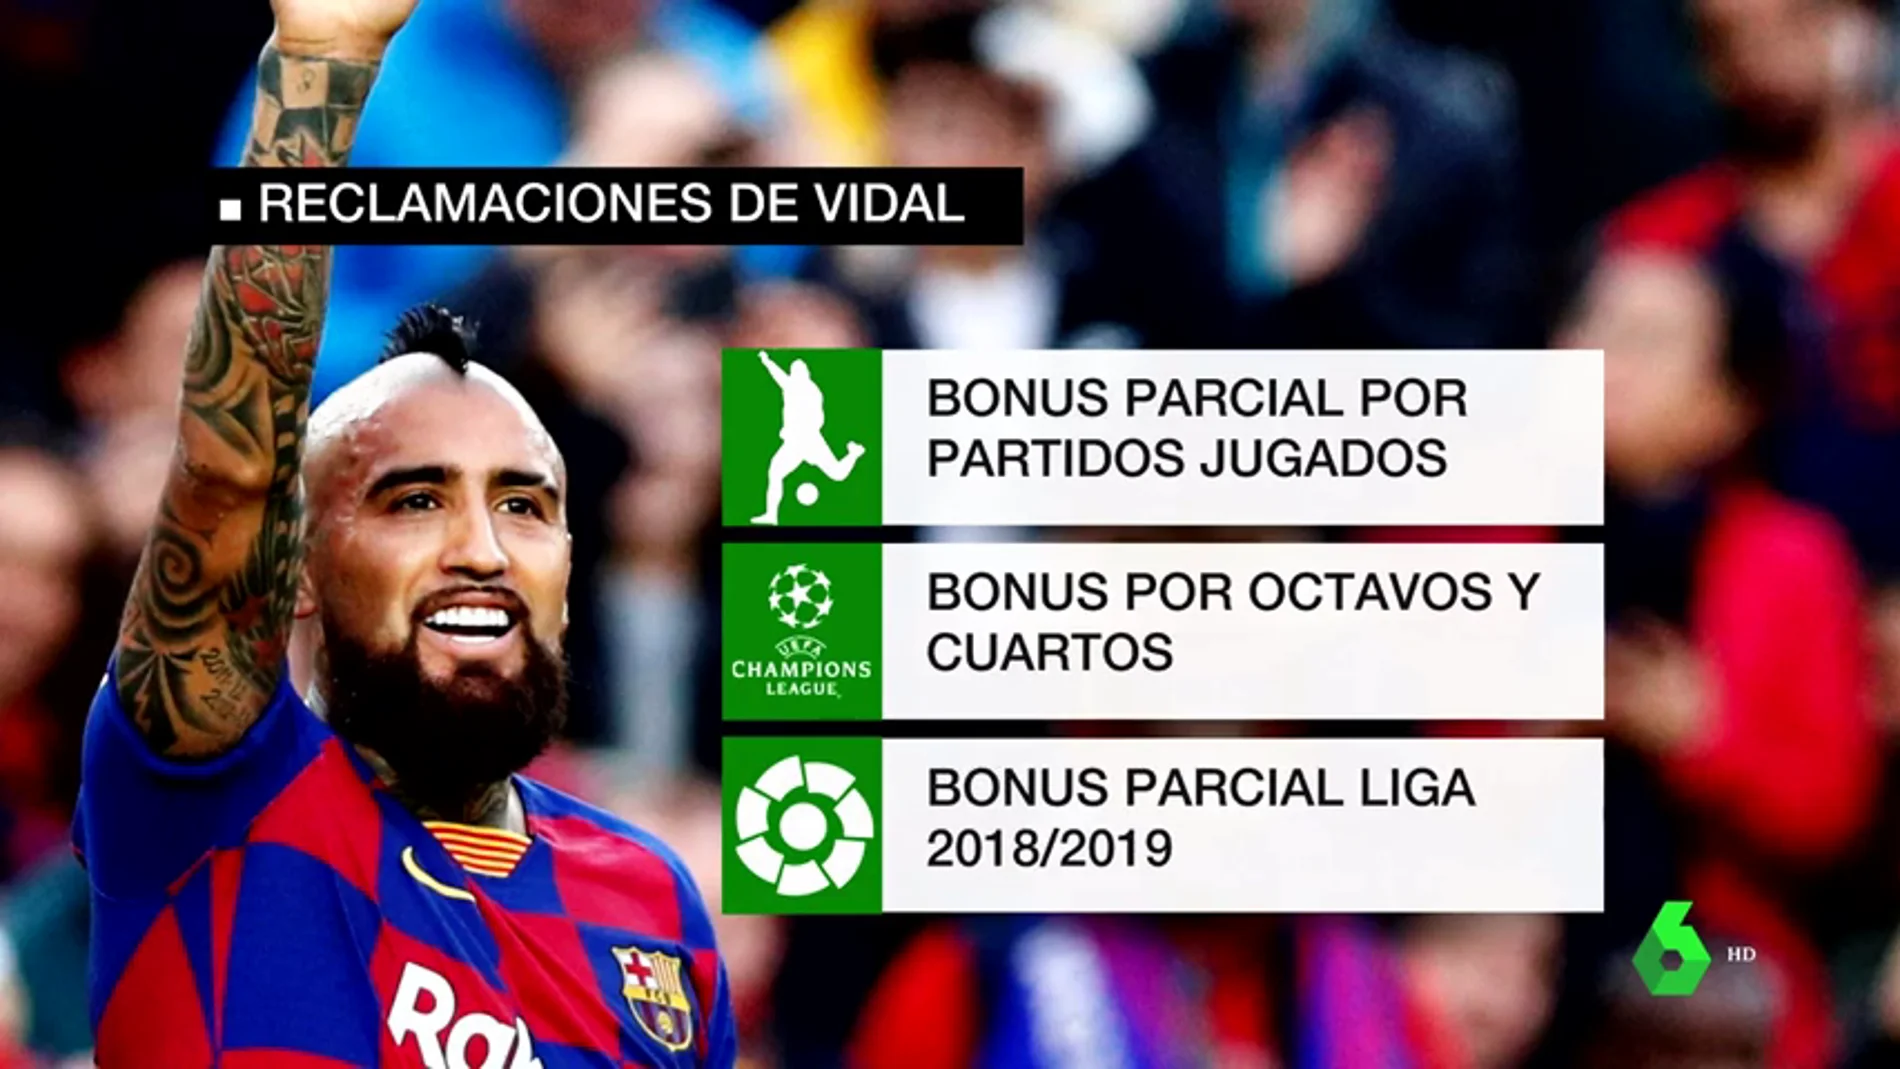 Habla Arturo Vidal tras denunciar al Barcelona por impago: "Me parece injusto si falta ese dinero"